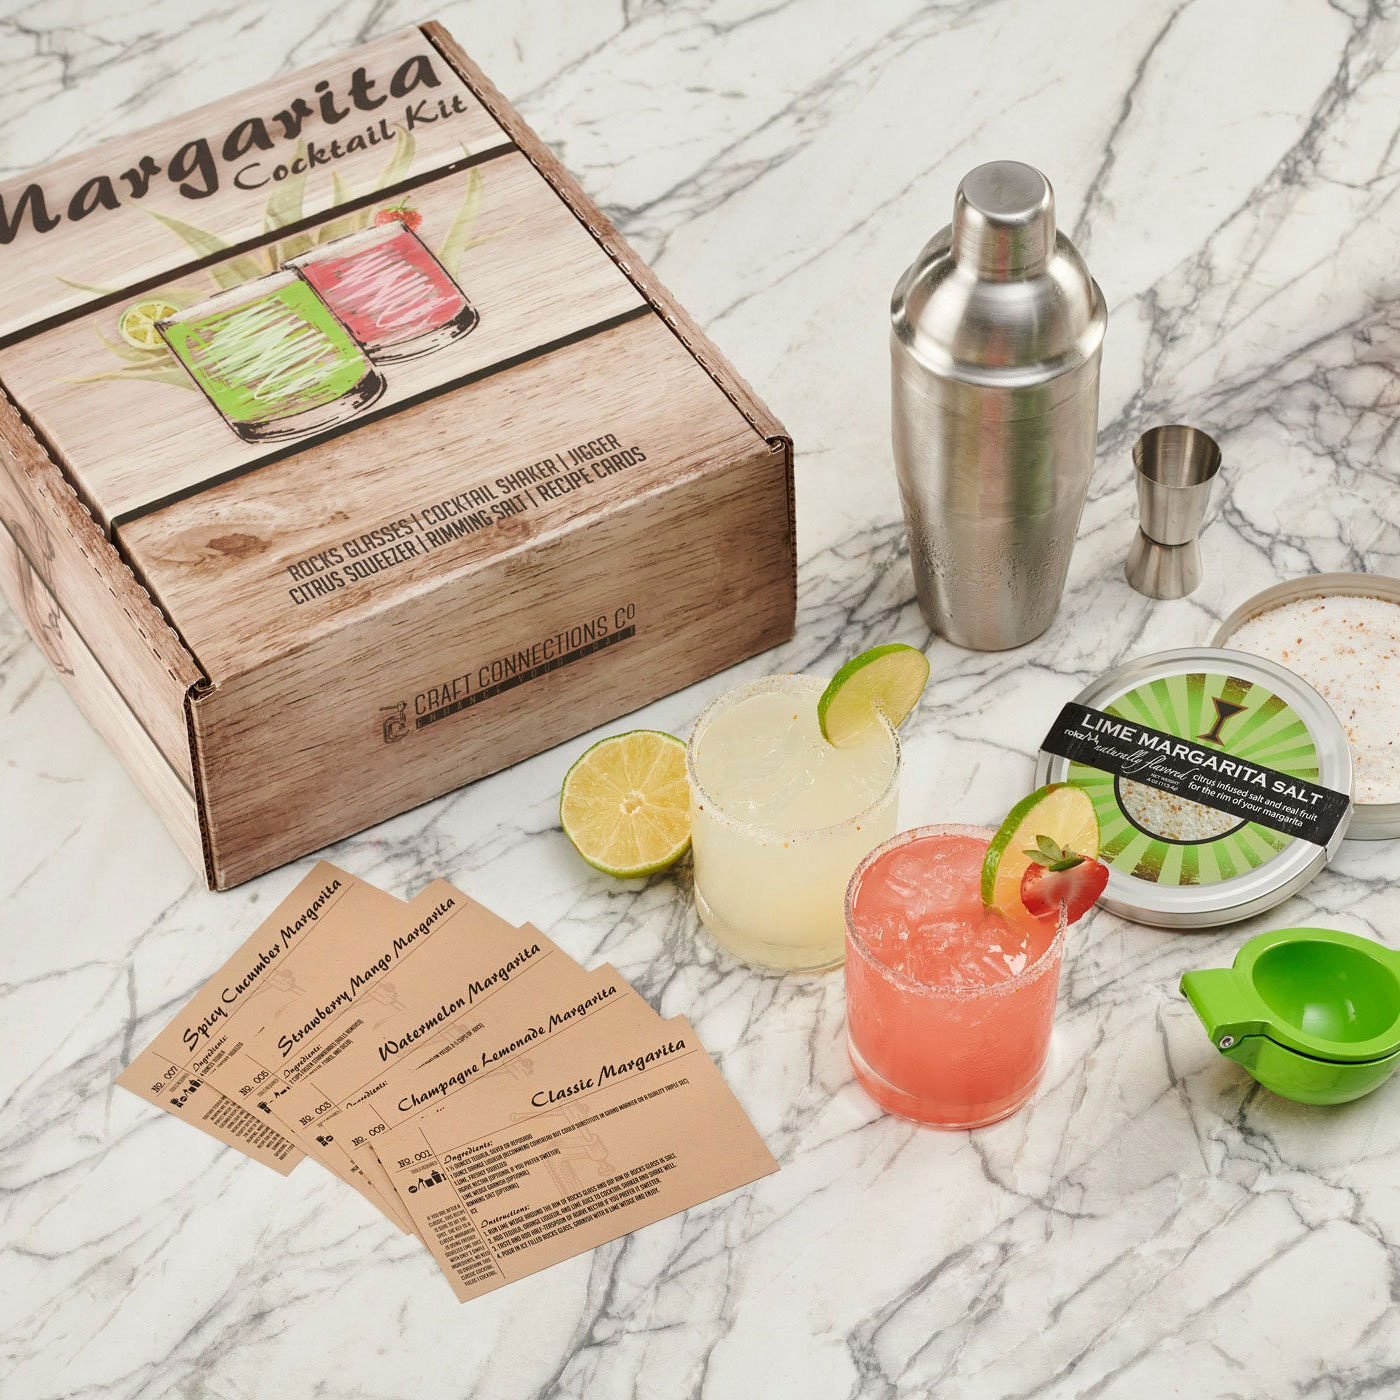 https://www.tasteofhome.com/wp-content/uploads/2023/02/margarita-cocktail-kit-UD-via-etsy.com-ecomm.jpg?fit=700%2C700